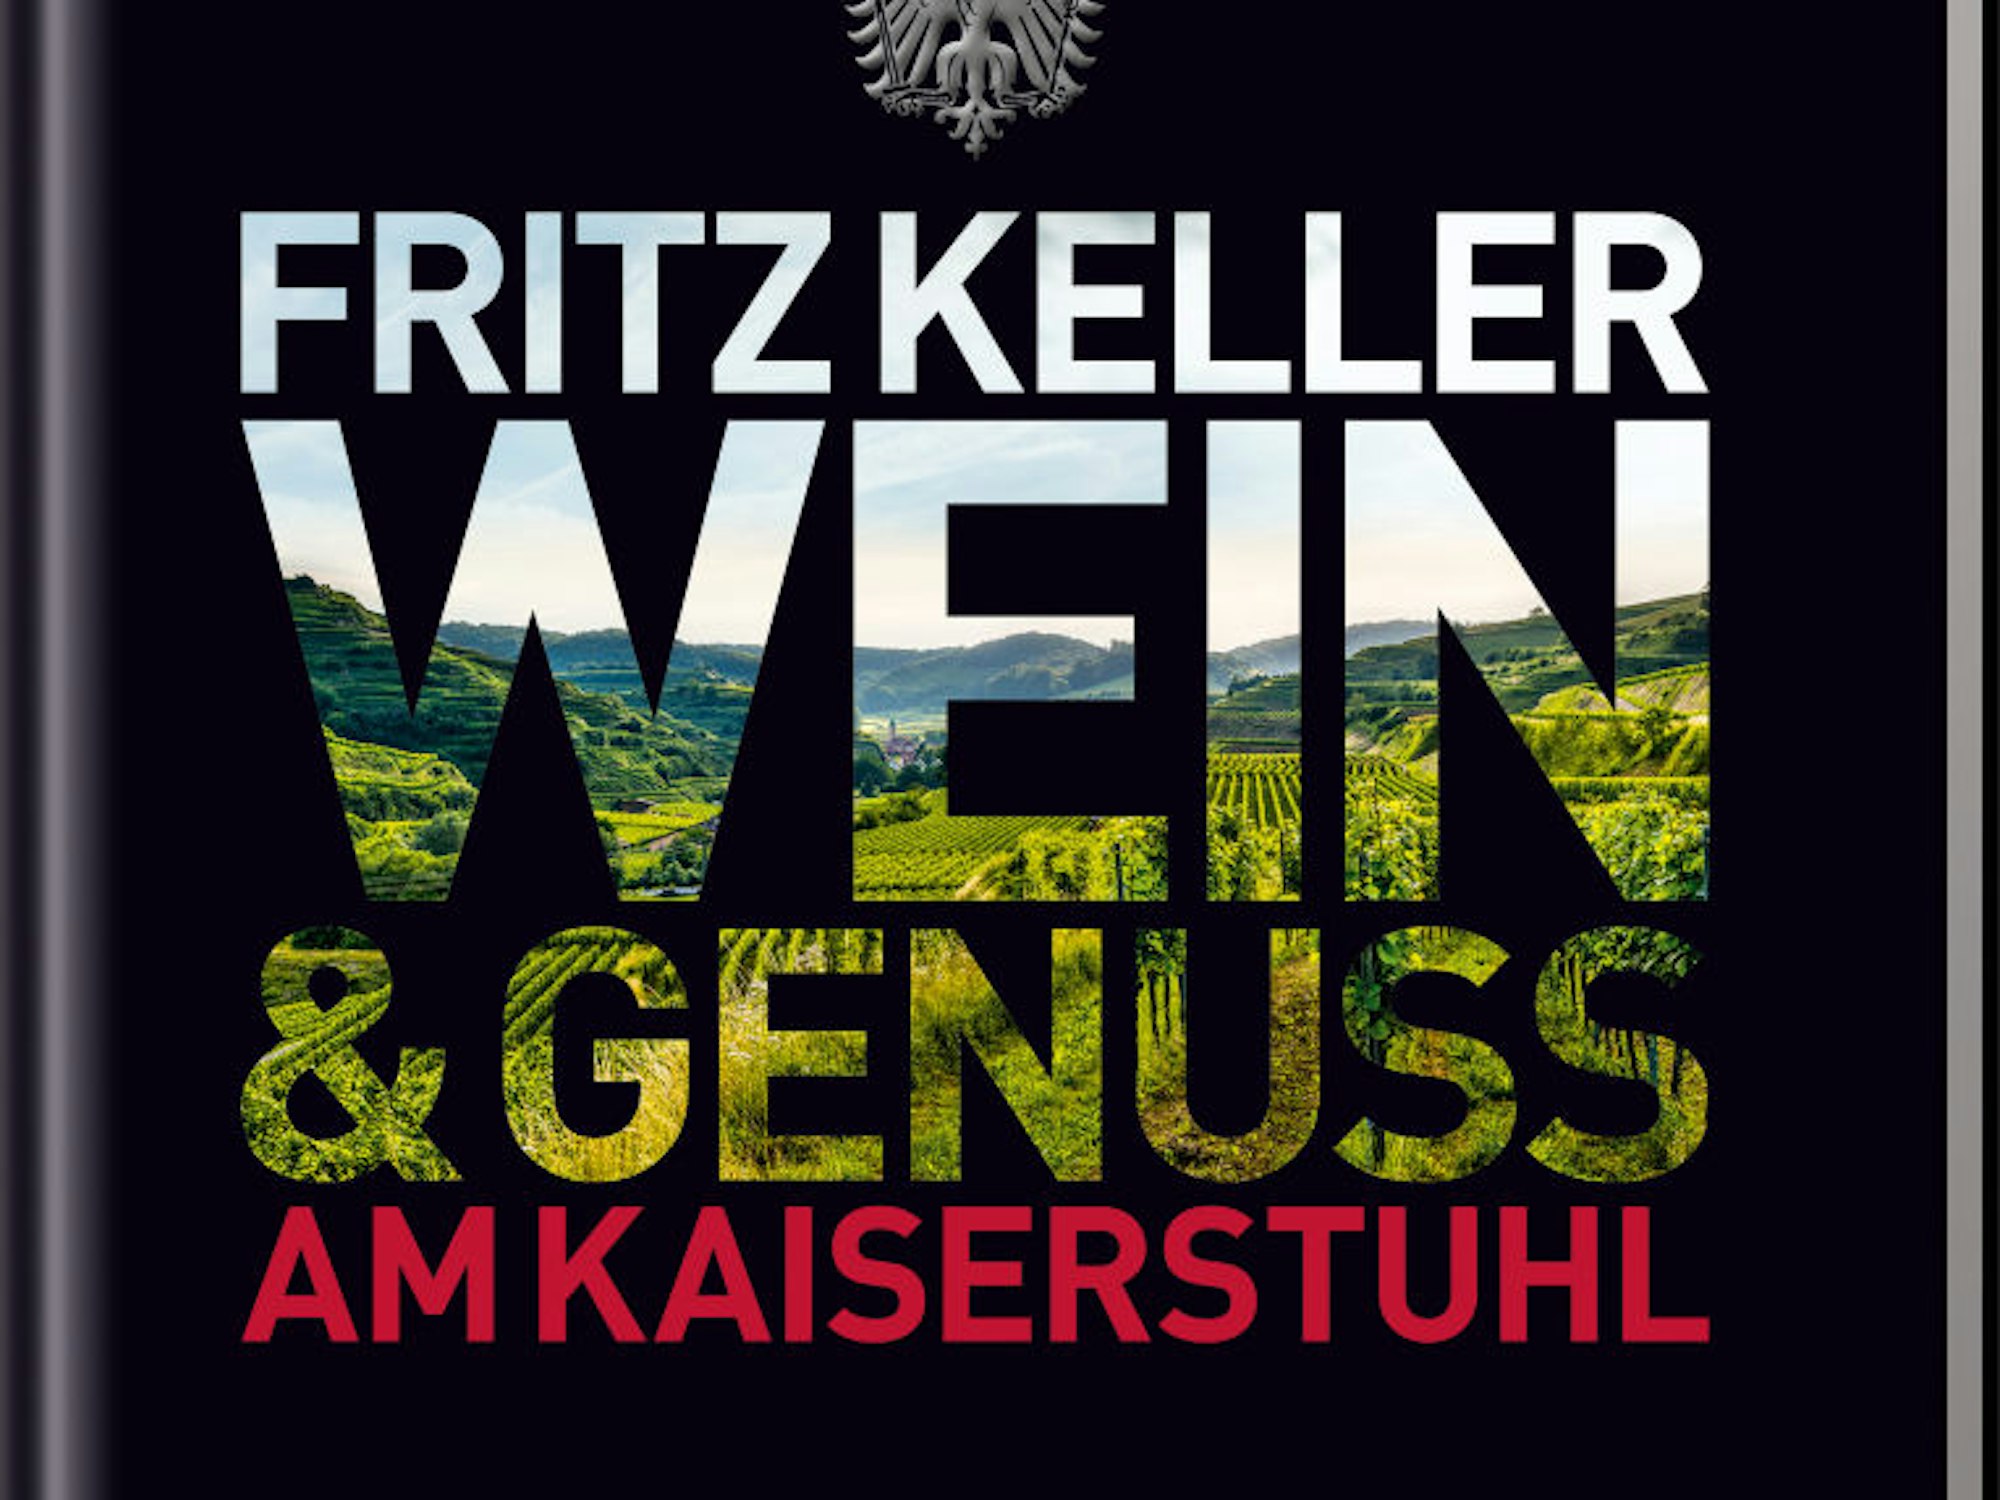 Ralf Frenzel (Hg): Fritz Keller - Wein & Genuss am Kaiserstuhl", Tre Torri Verlag, 256 Seiten, 49,90 Euro